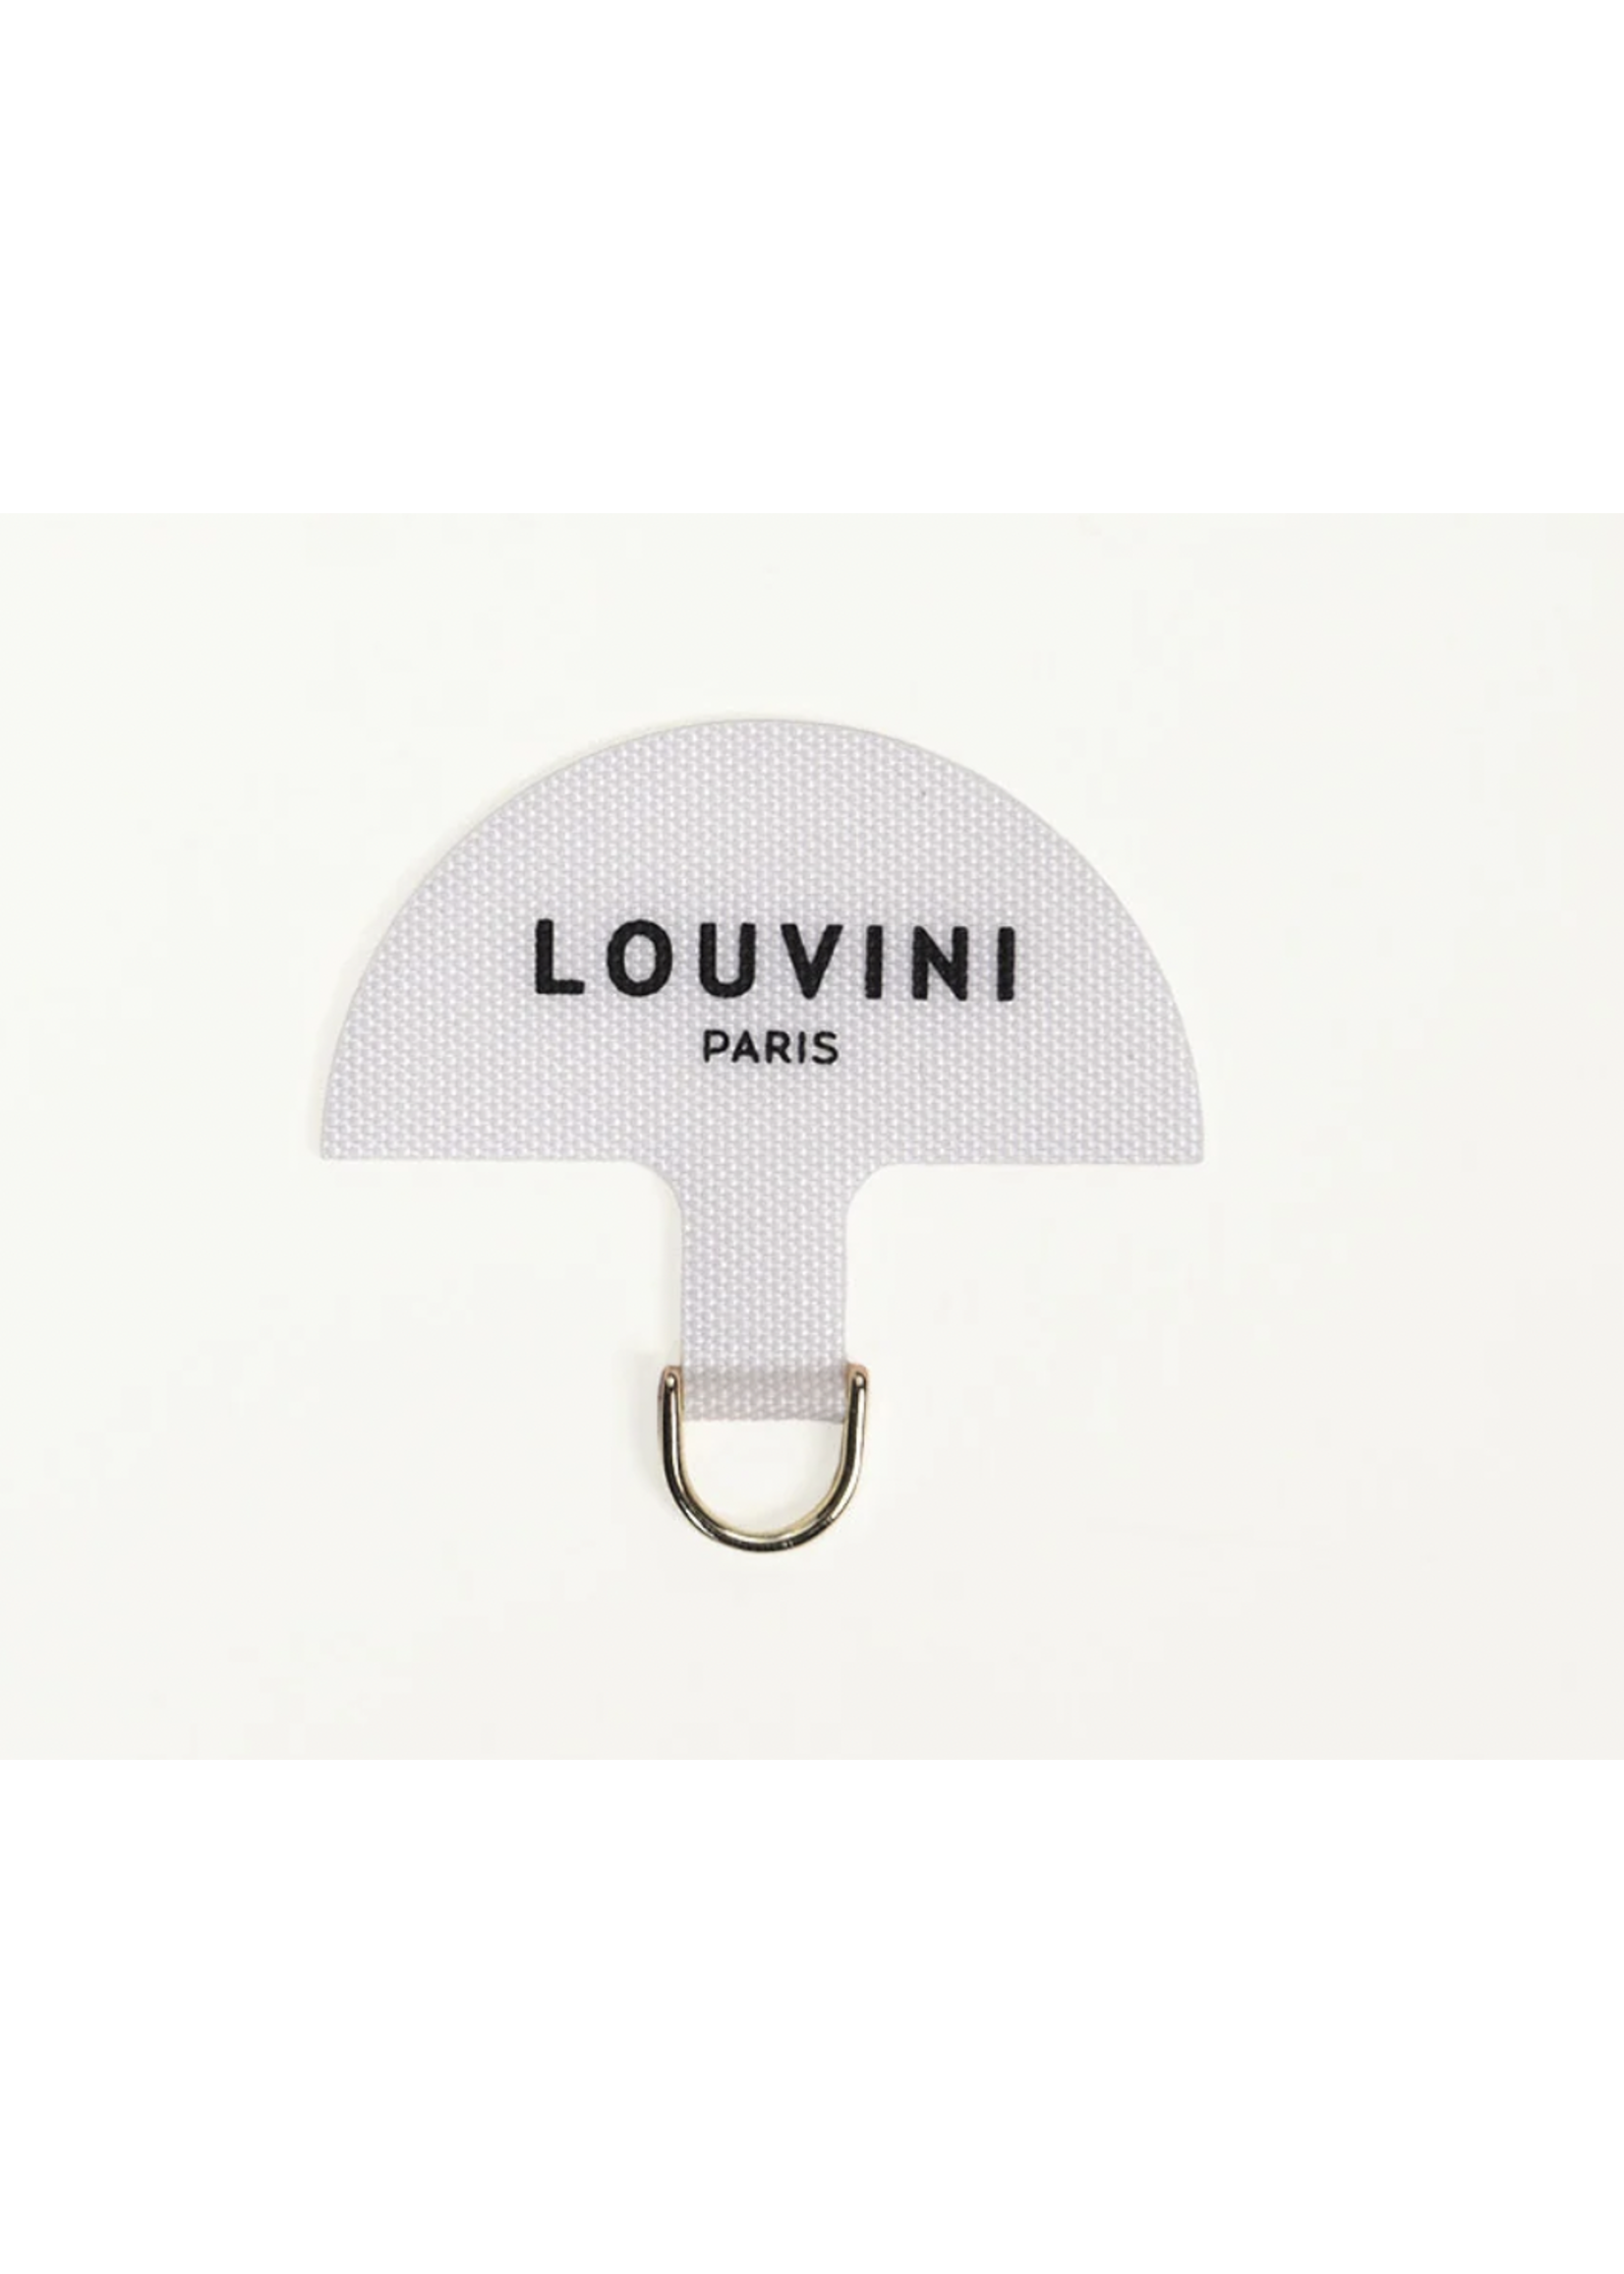 Louvini Paris Miki Universal Louvini Adapter - White